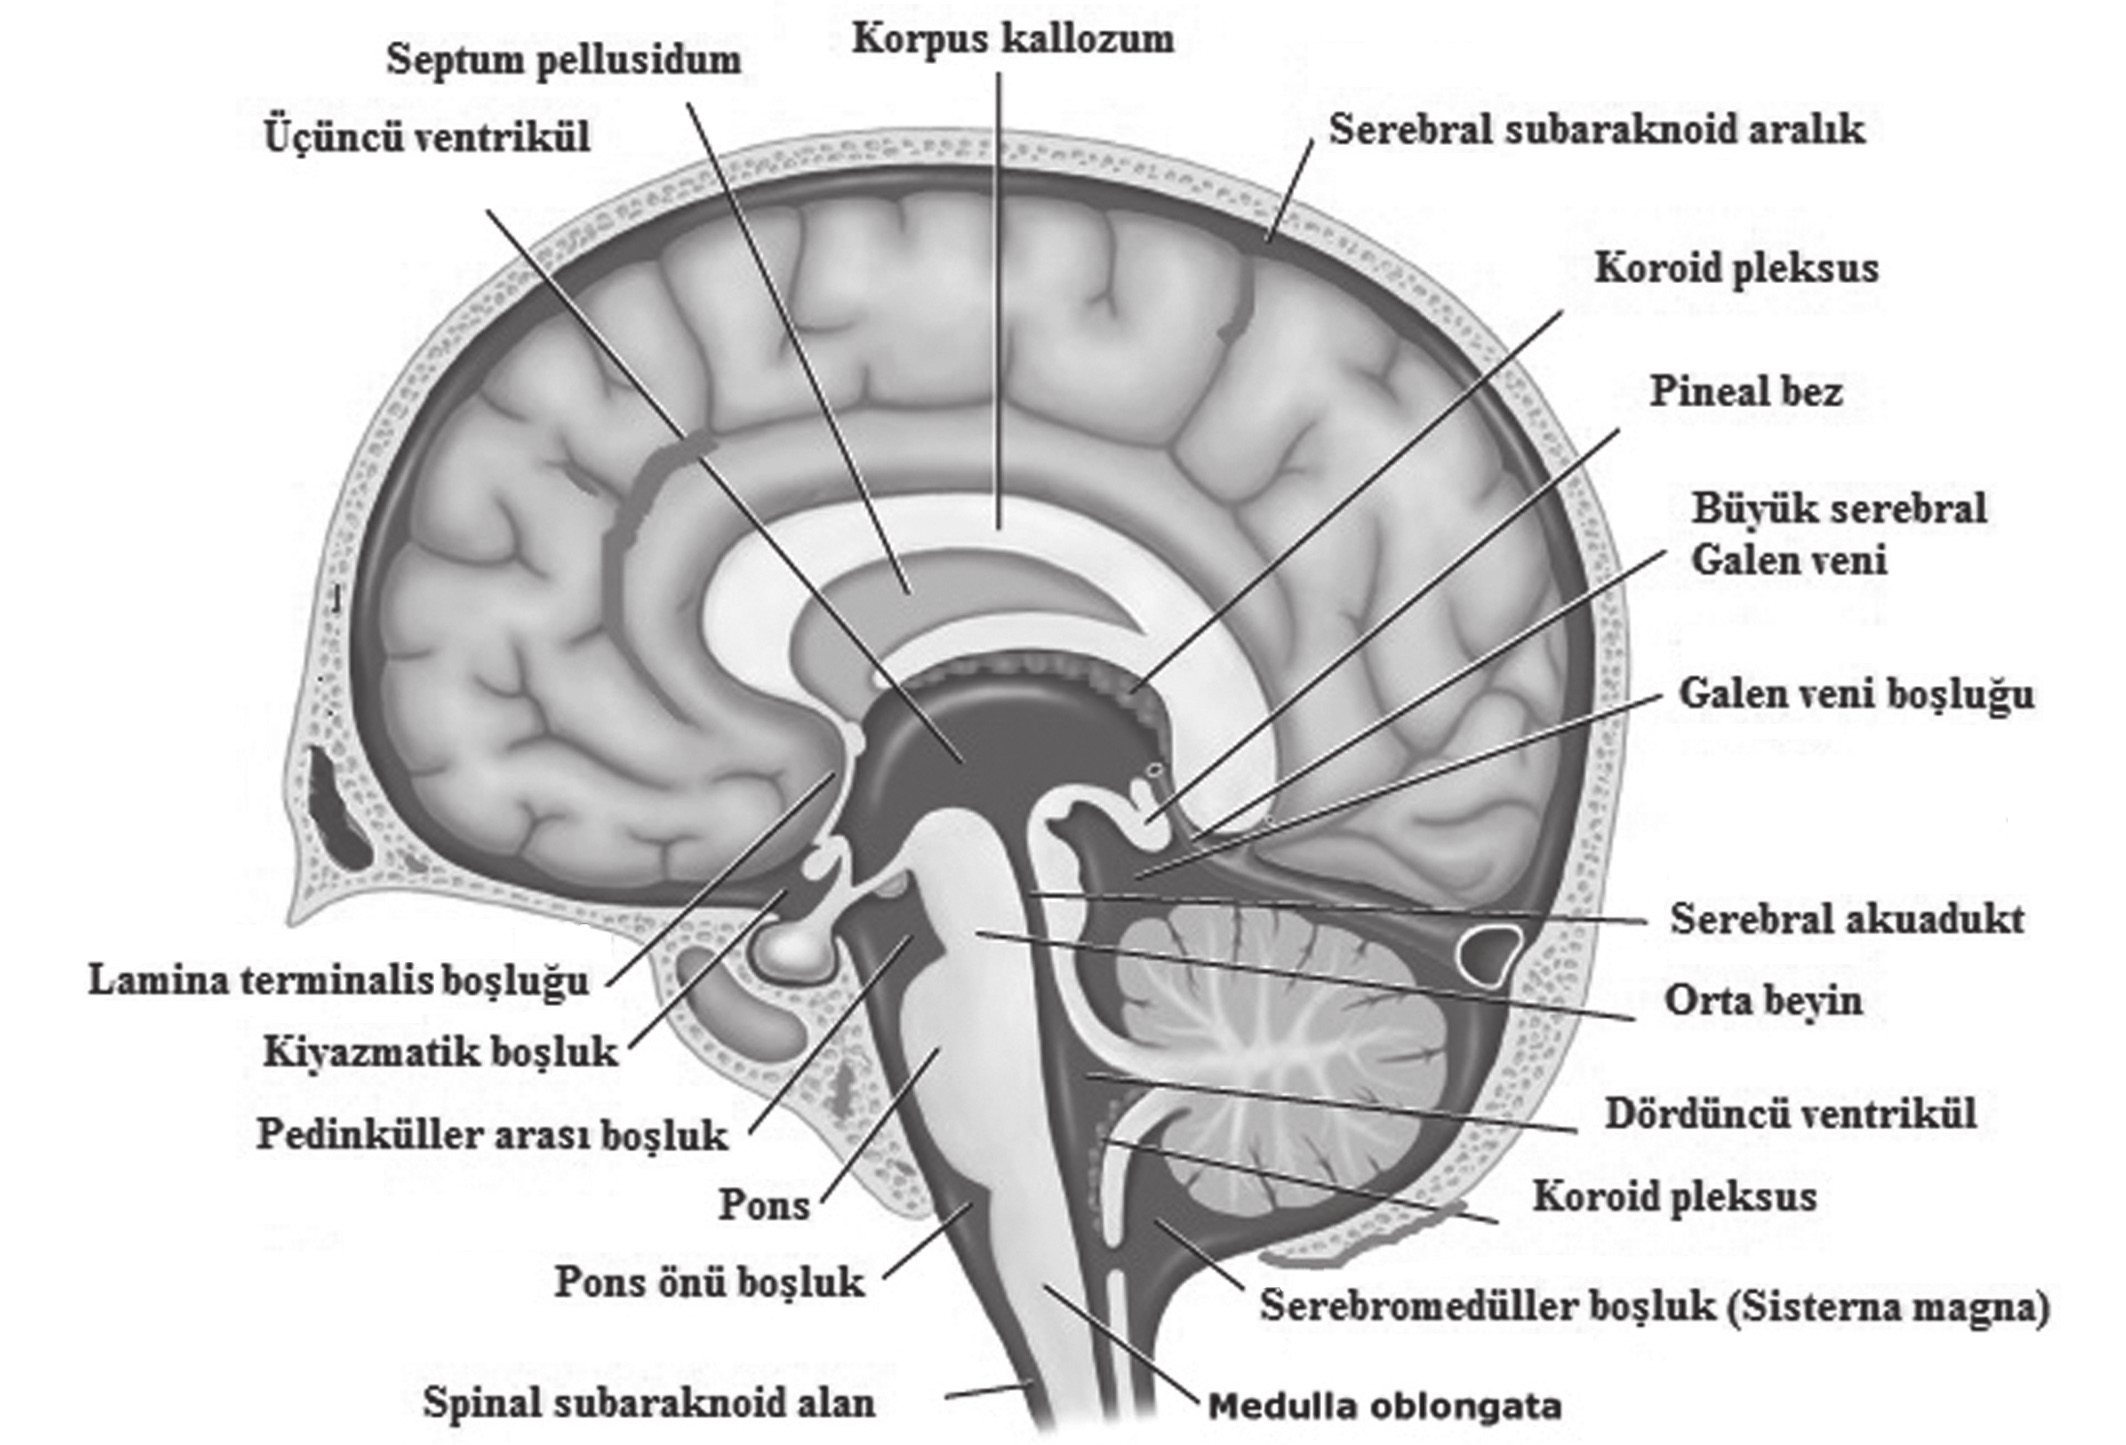 oluşan bir çekirdeğin etrafındaki epitel ile döşeli villöz katlantılardan oluşan koroid pleksus bütün serebral ventriküllerde bulunmaktadır.